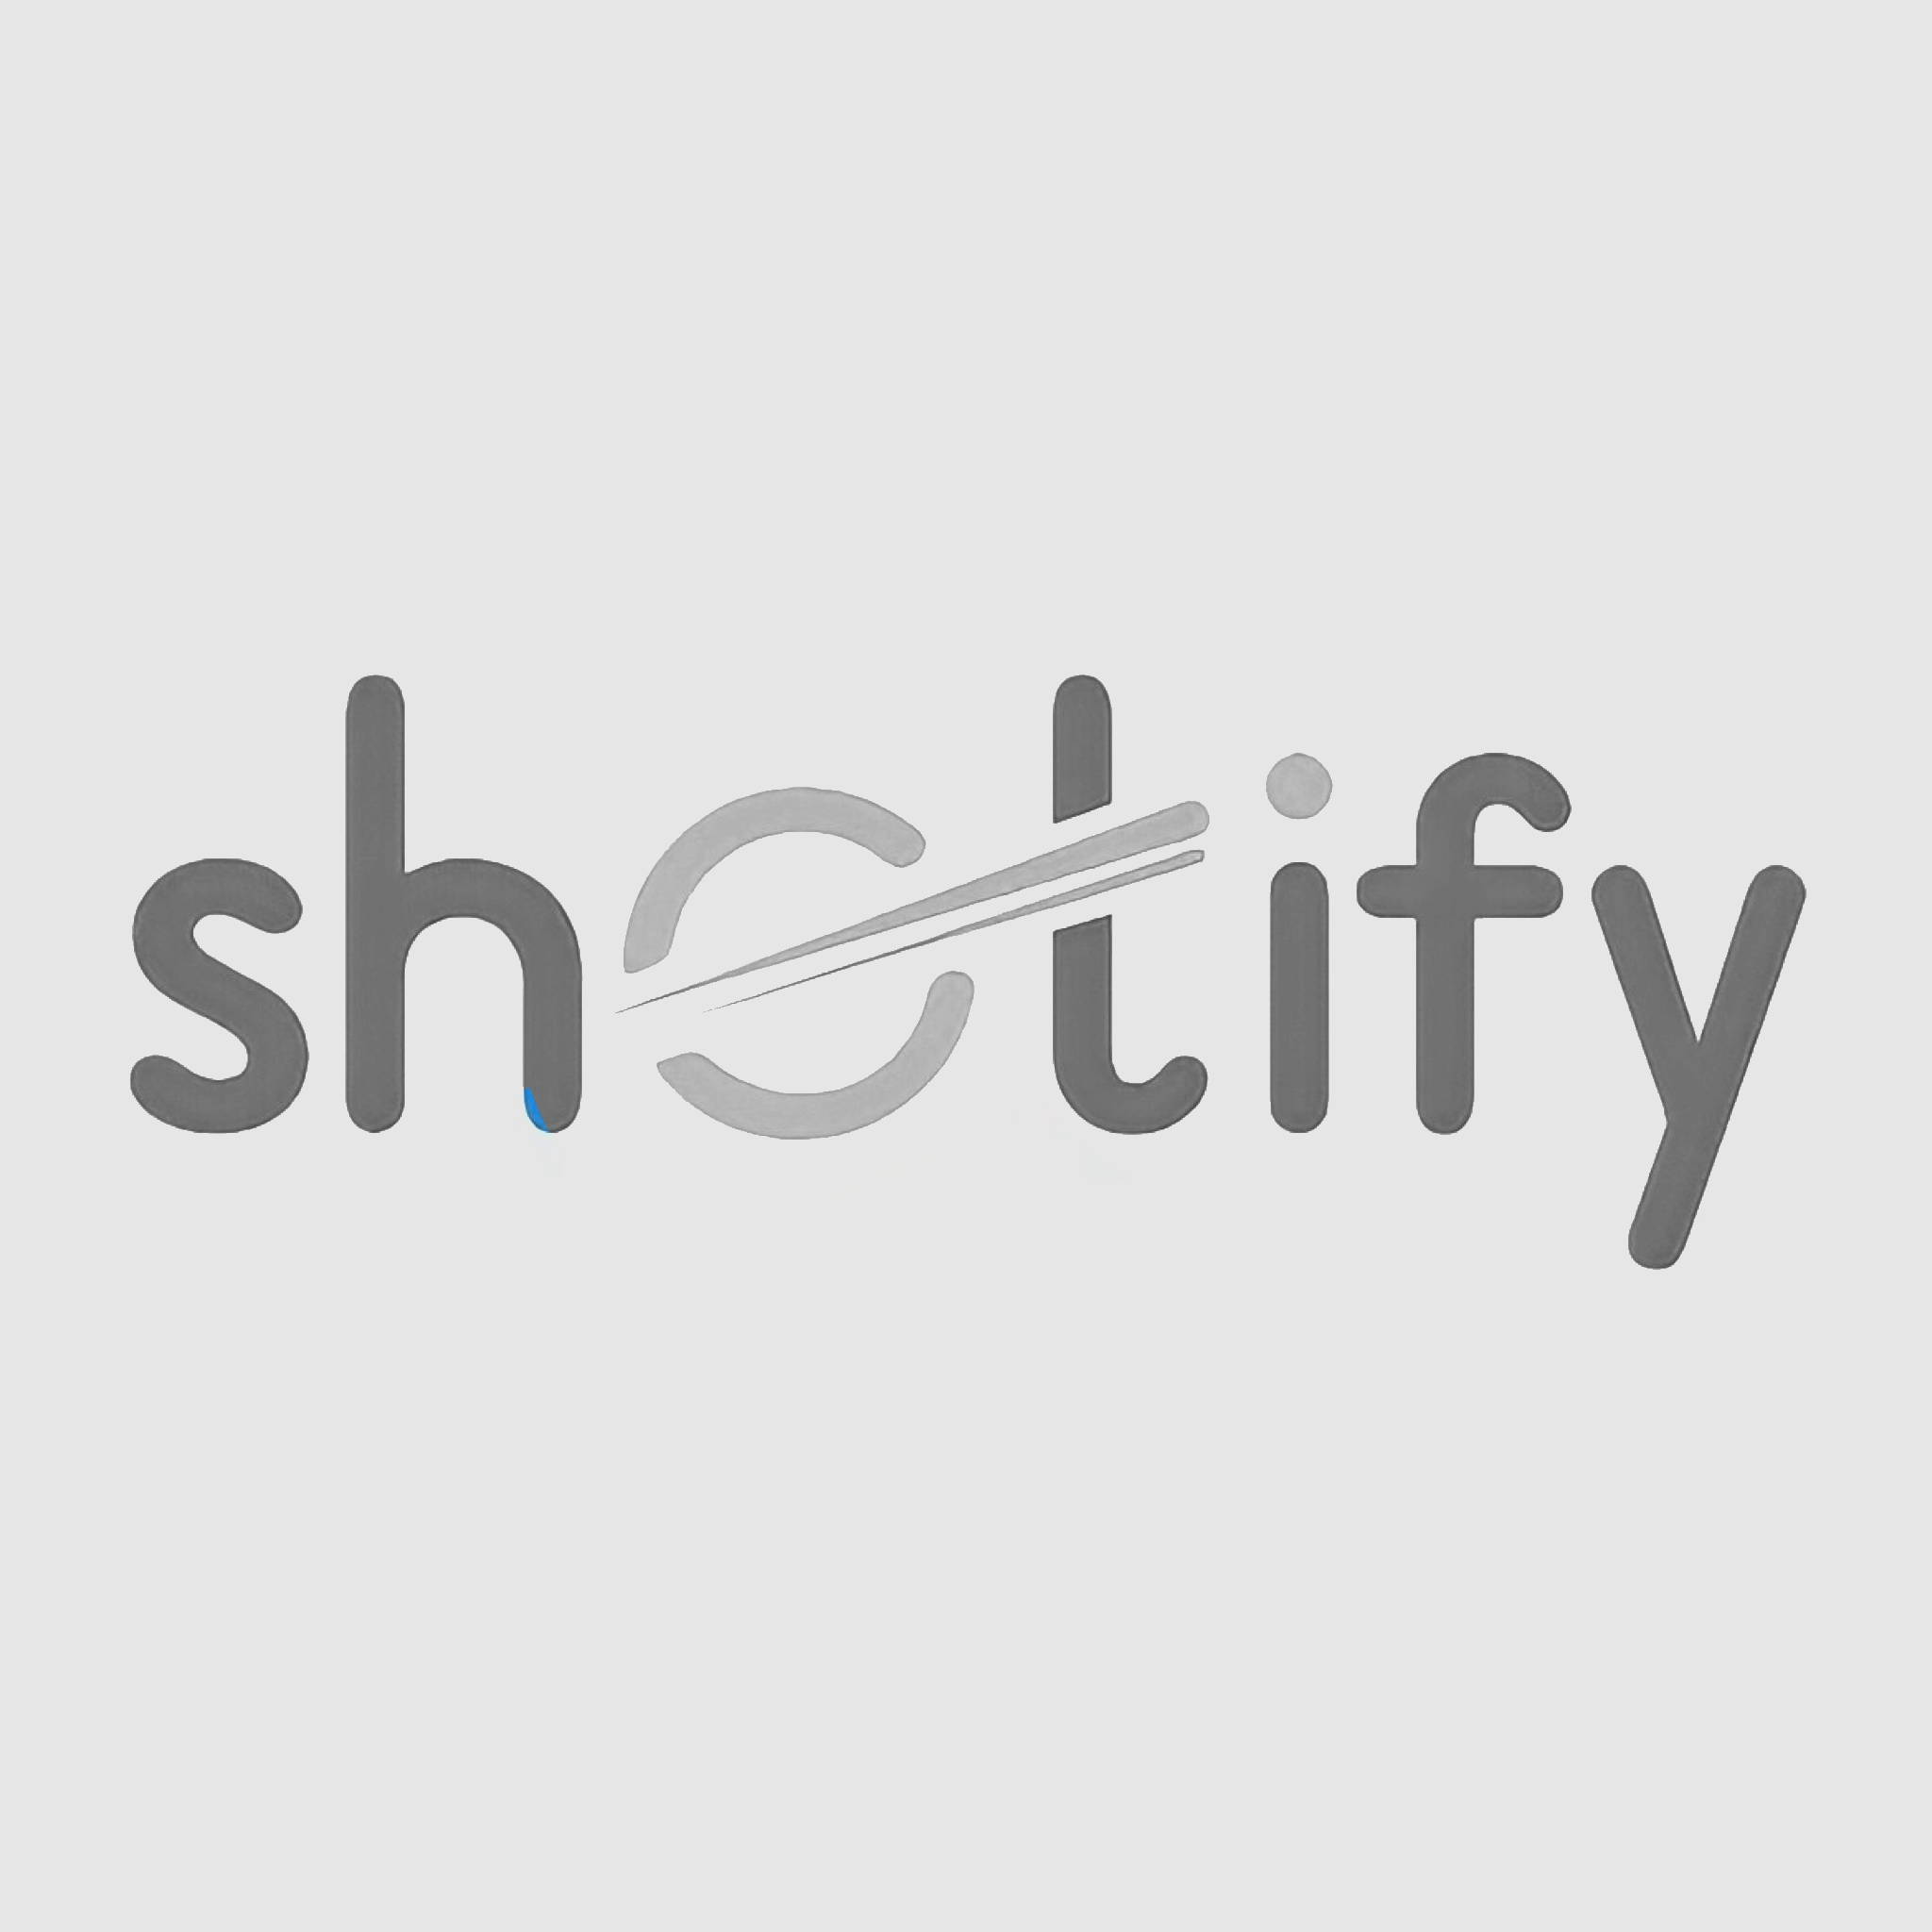 649-shotify-grey.png